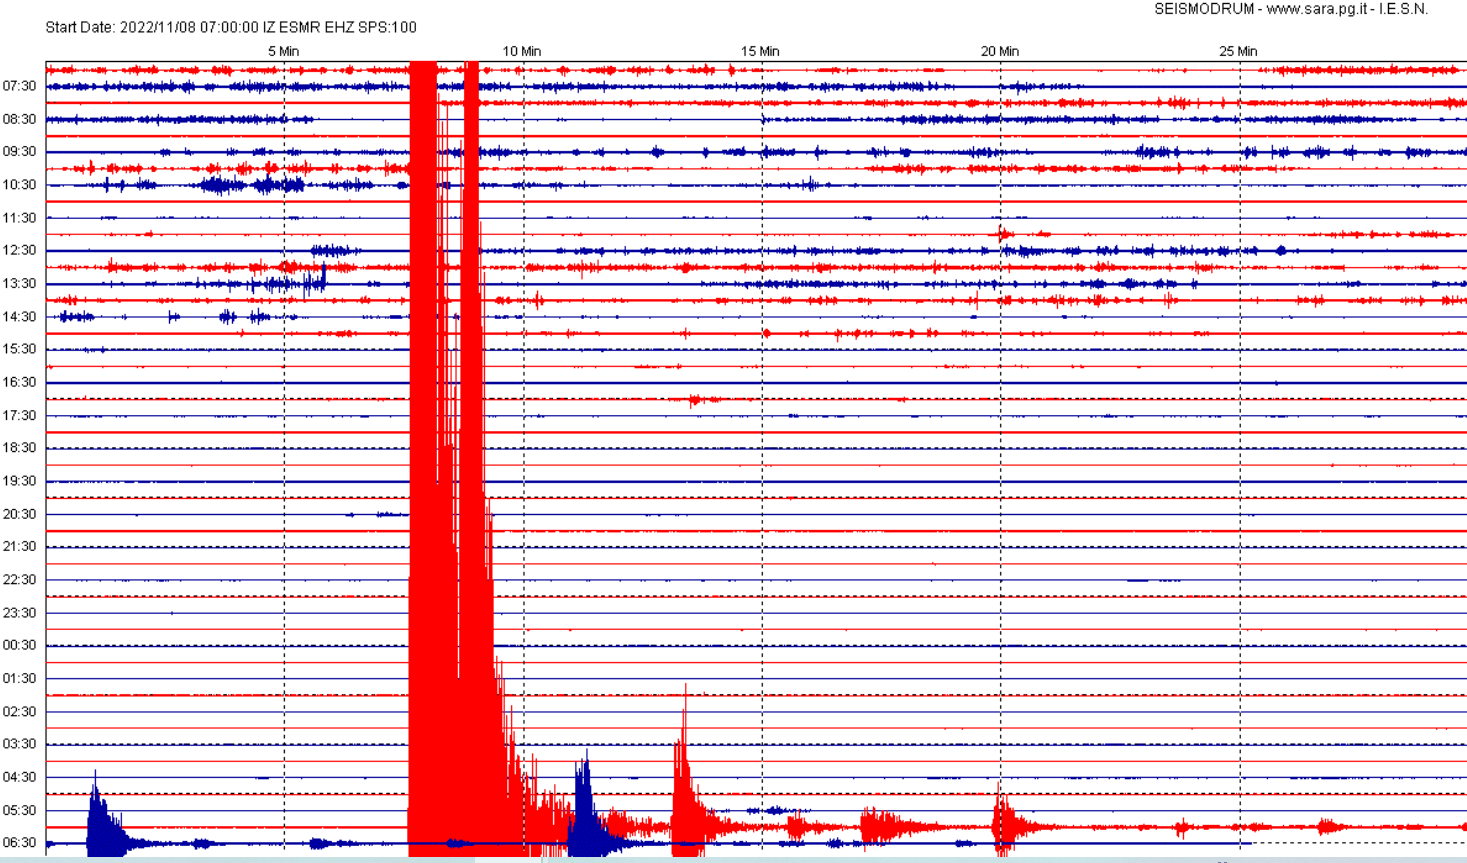 San Marino. Sismografo di Casole ha registrato fortissima scossa di terremoto in Adriatico